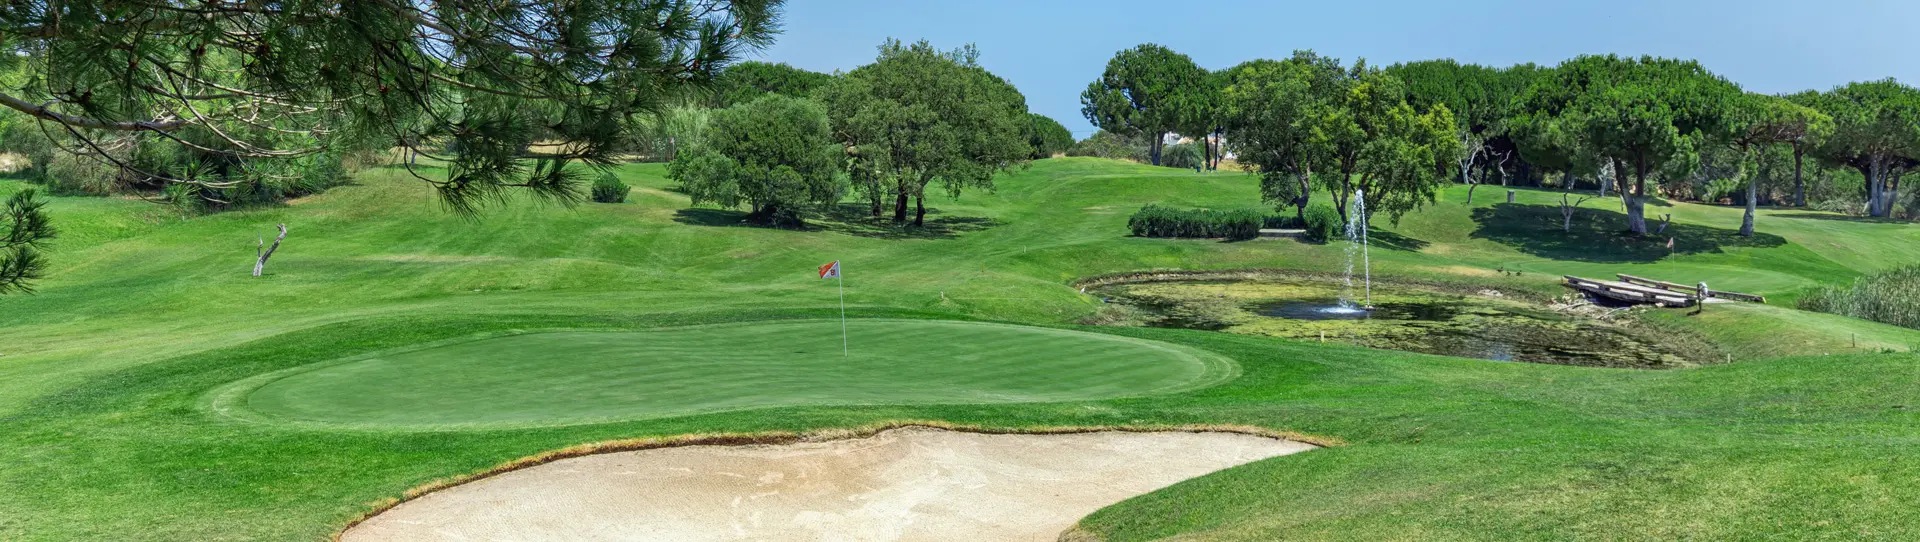 Portugal golf courses - Balaia Golf Course - Photo 1